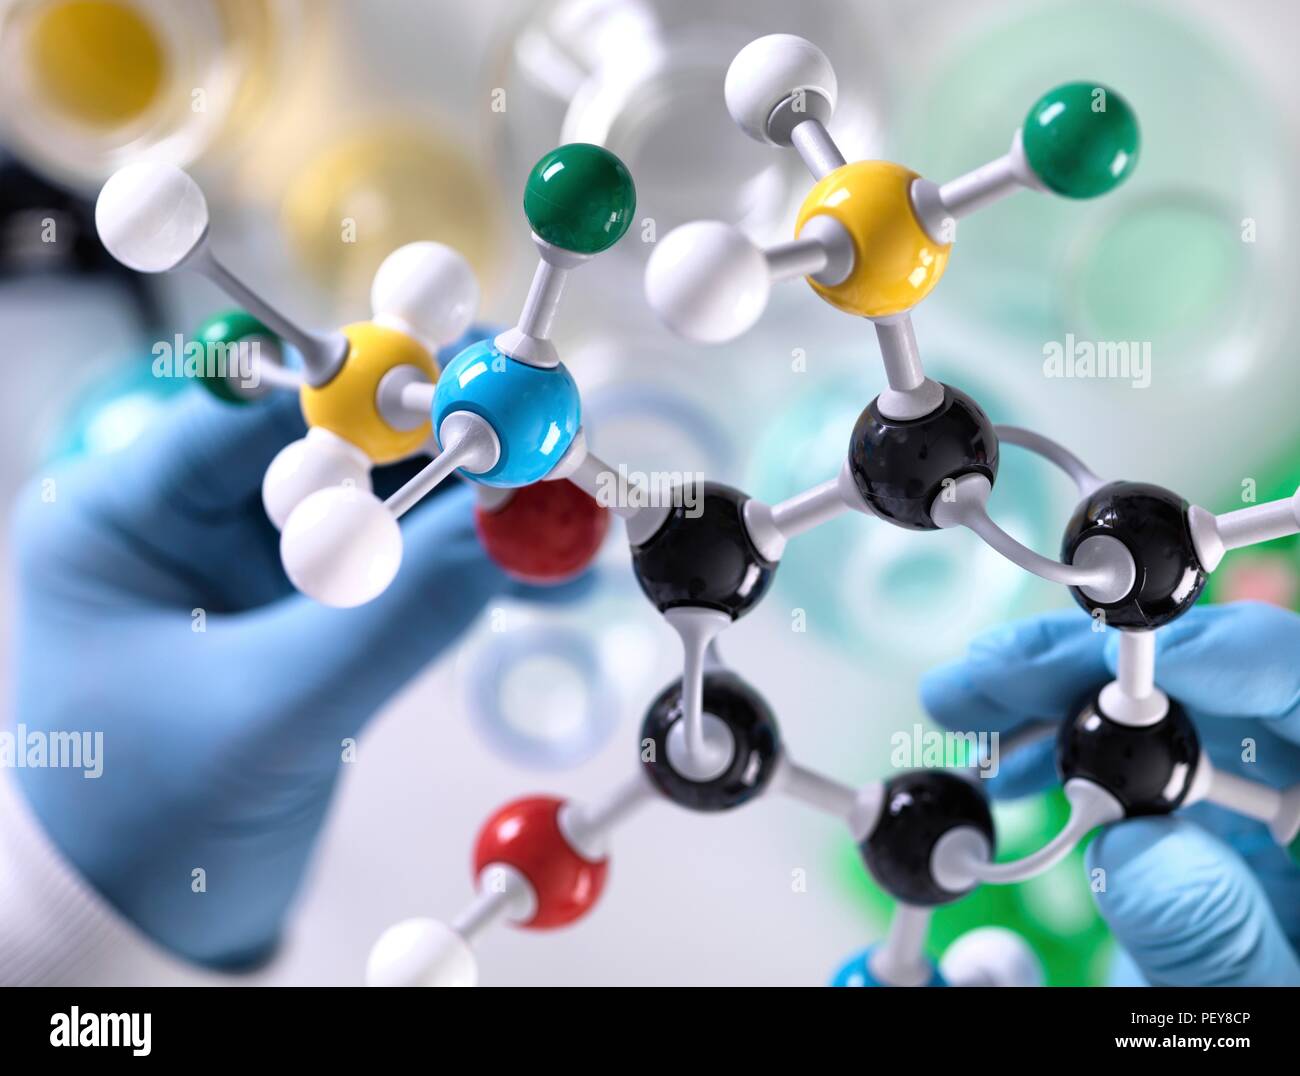 Chemie Forschung. Forscher entwerfen eine chemische Formel mit einem molekularen Modell. Stockfoto